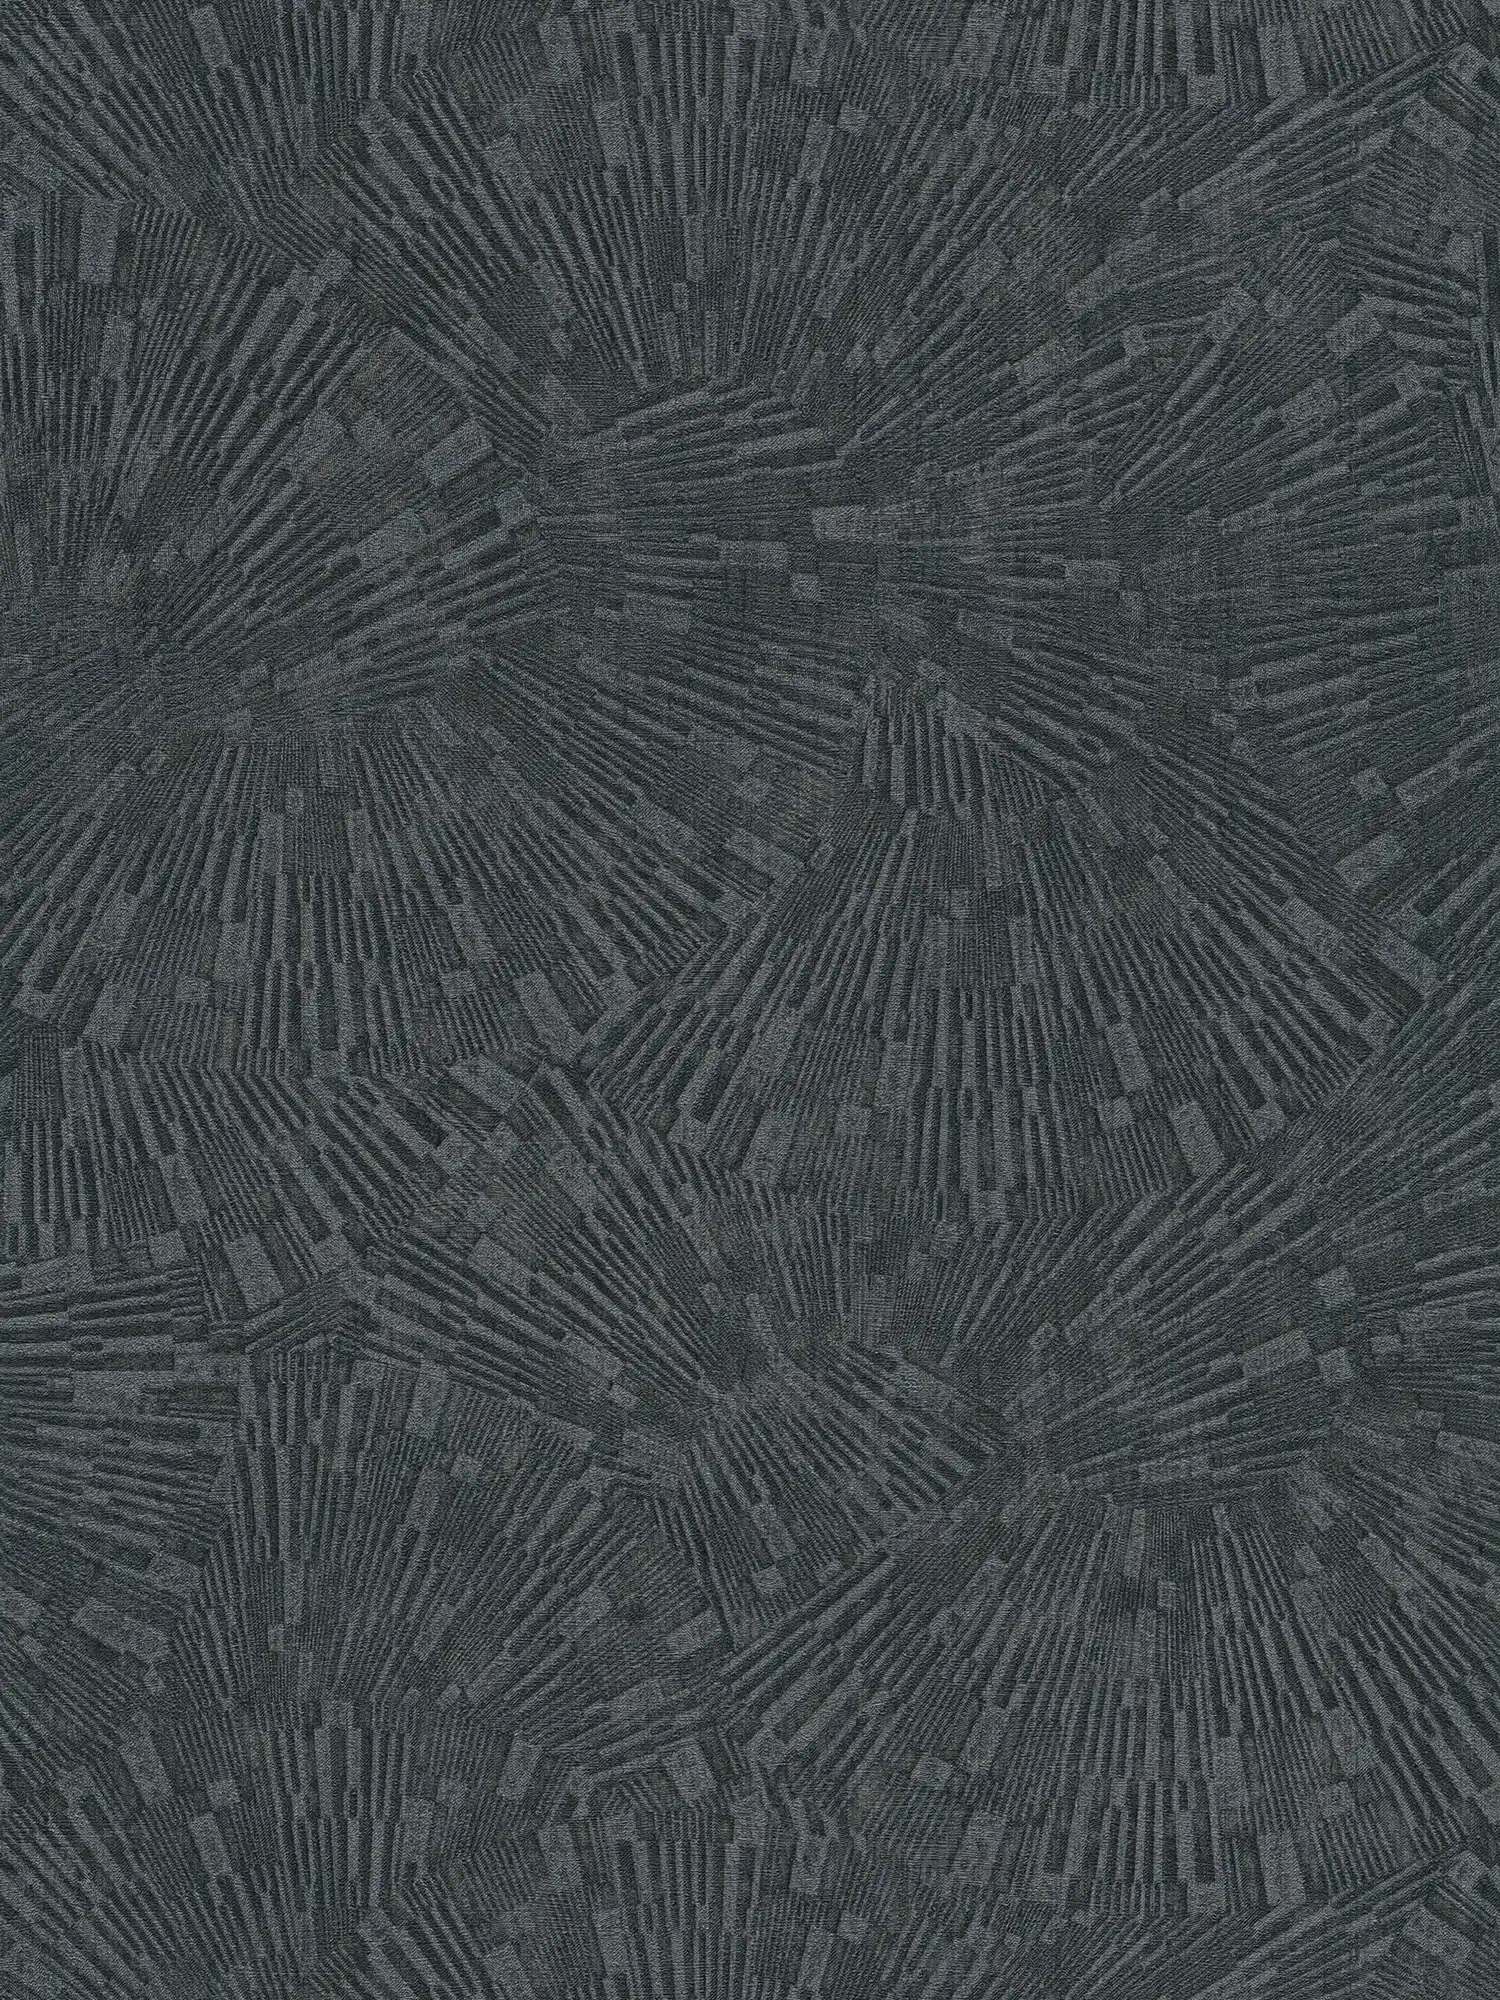 Zwart behang glanzend met textuureffect - Bruin, Zwart
